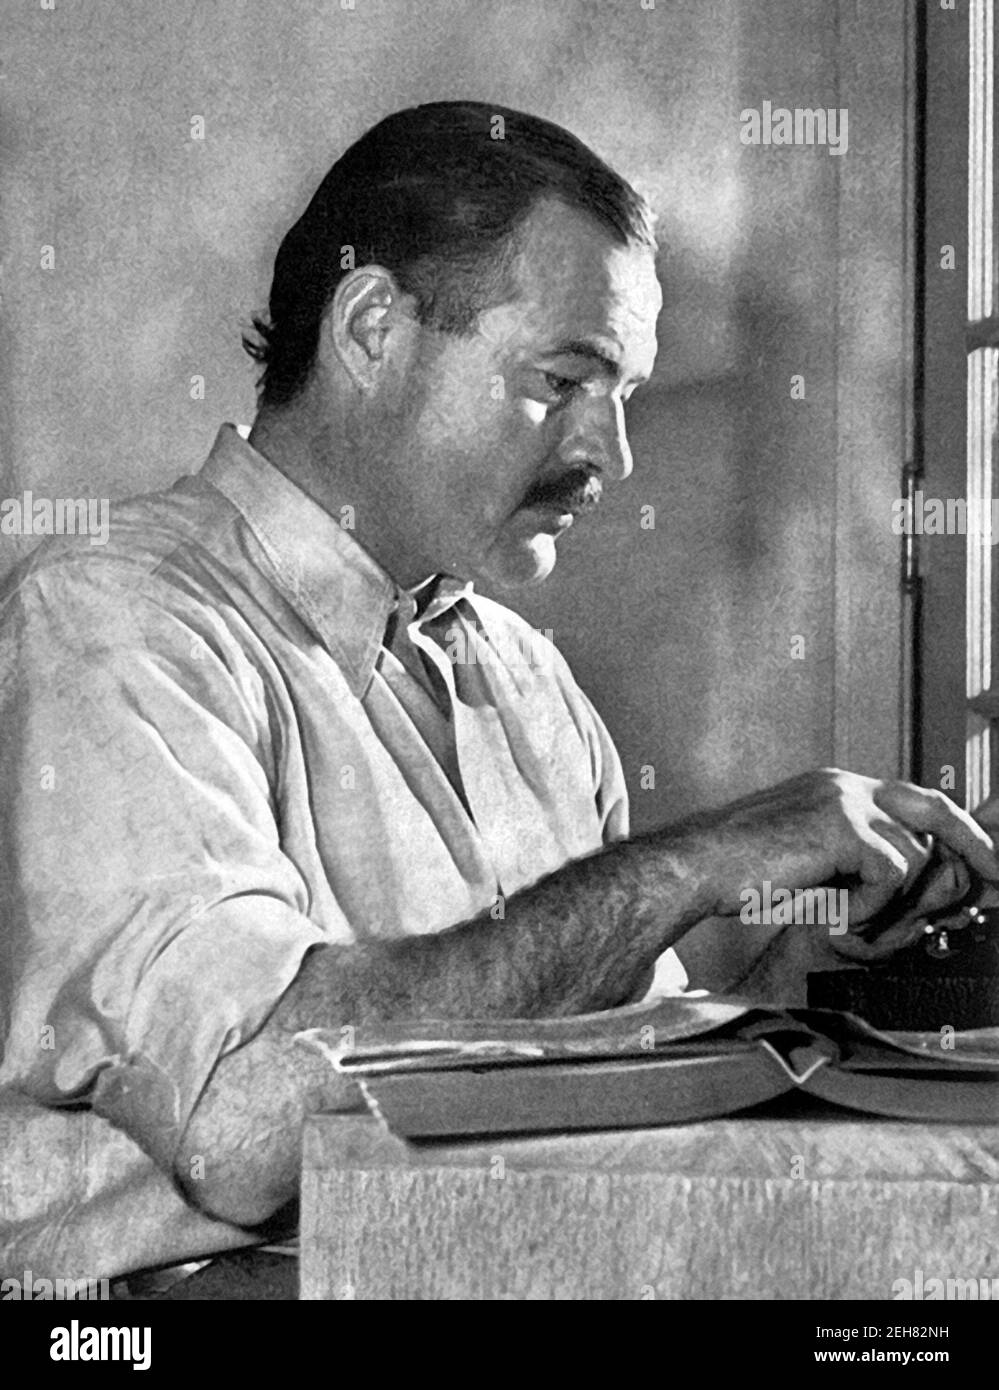 Ernest Hemingway. Porträt des amerikanischen Schriftstellers Ernest Miller Hemingway (1899-1961) an seiner Schreibmaschine 1939. Stockfoto